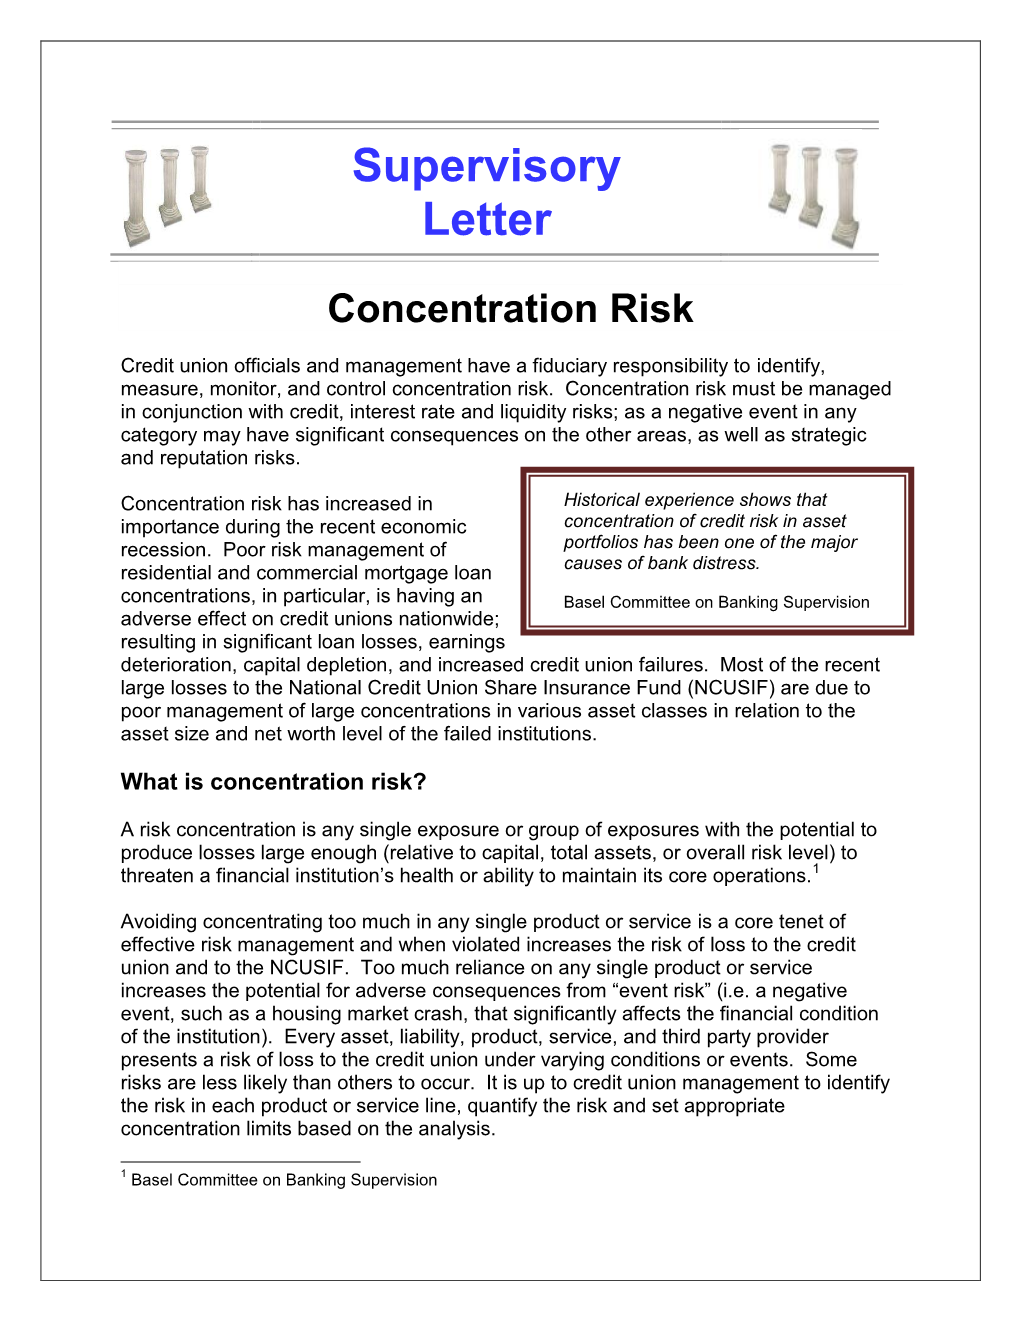 Supervisory Letter: Concentration Risk